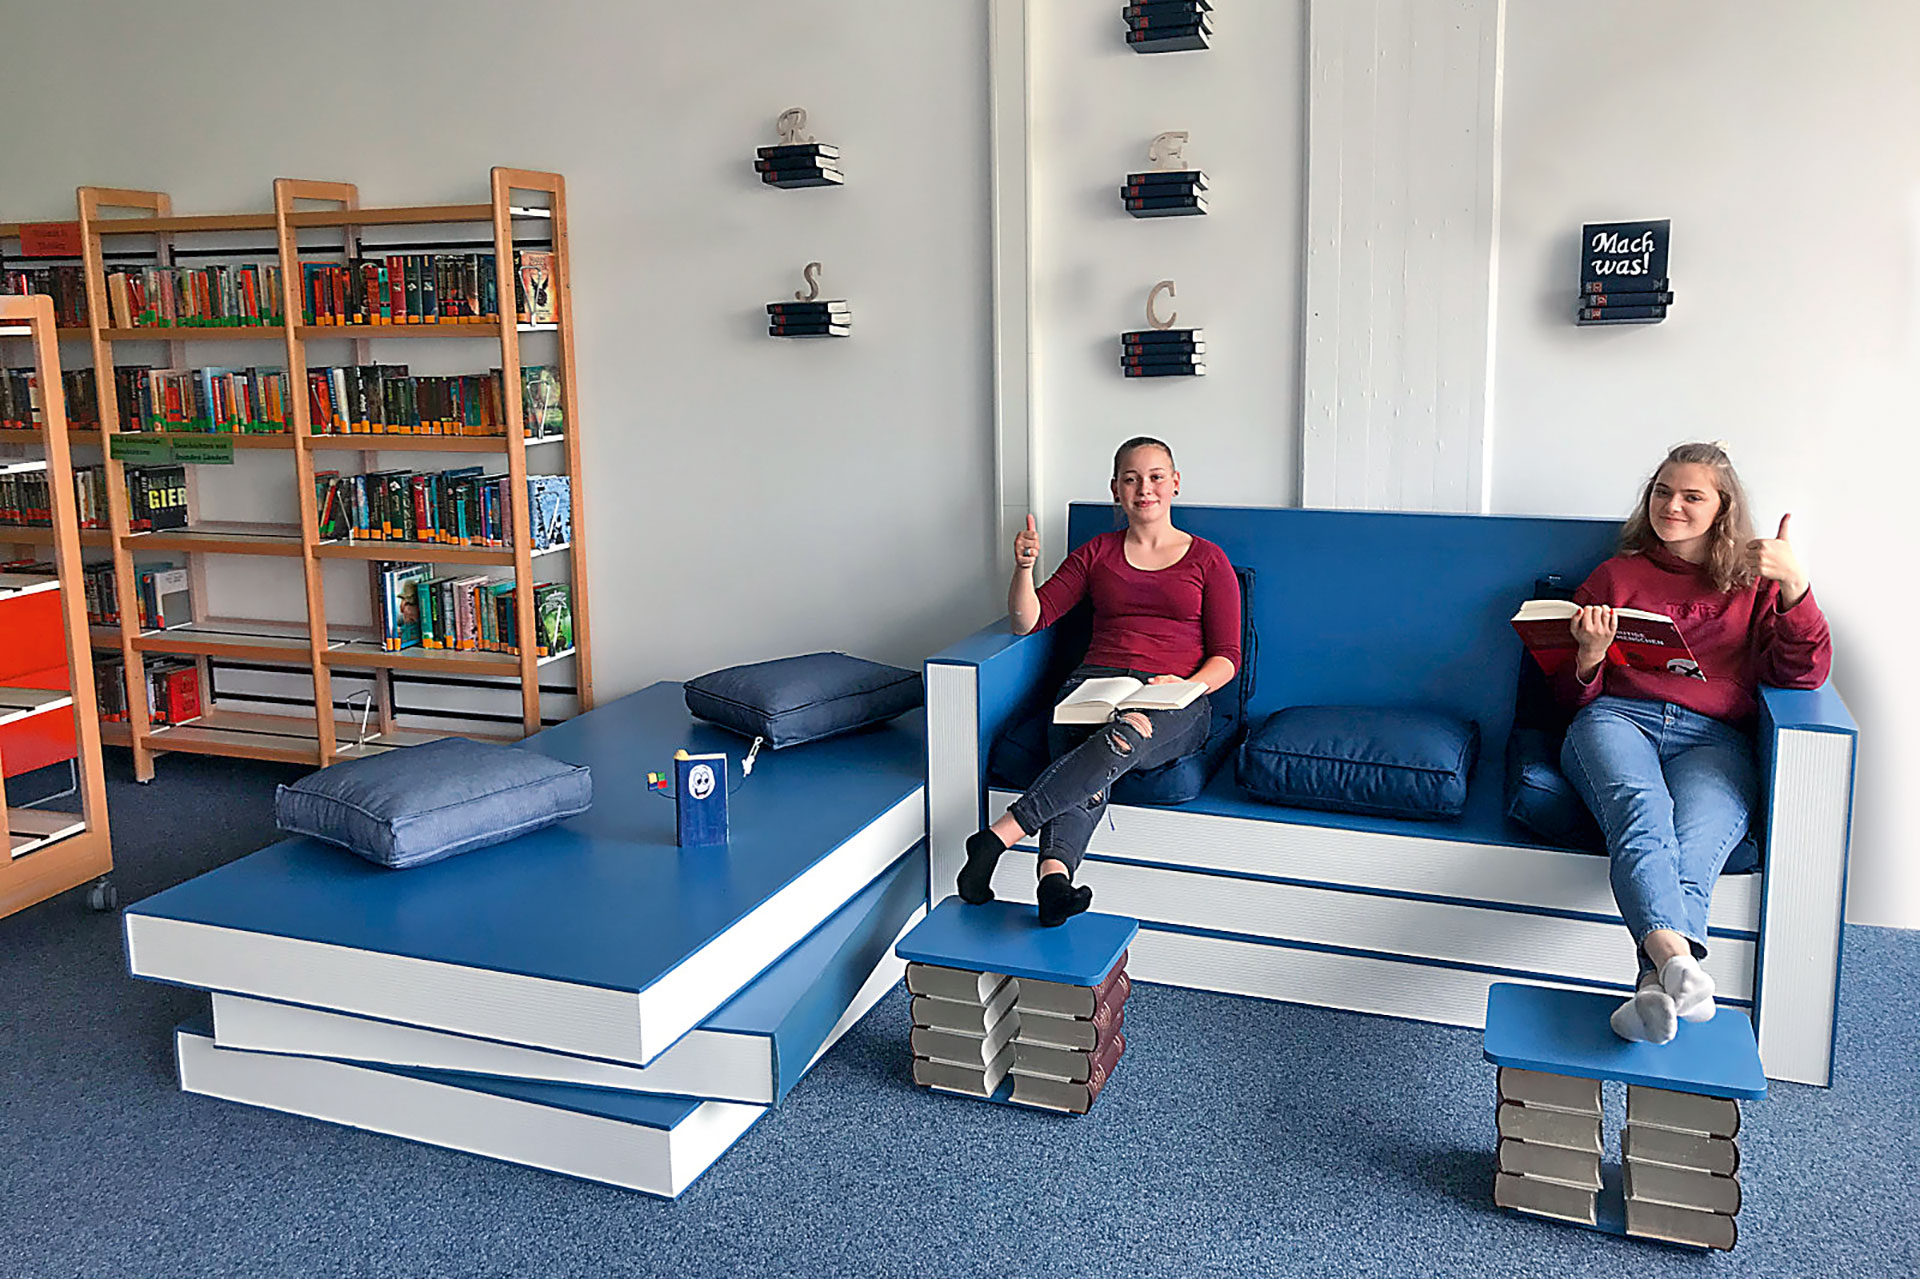 Für die Schulbücherei der Realschule Neustadt bei Coburg haben die Schülerinnen und Schüler der neunten Klasse eine Sitzgelegenheit in Bücheroptik gebaut.